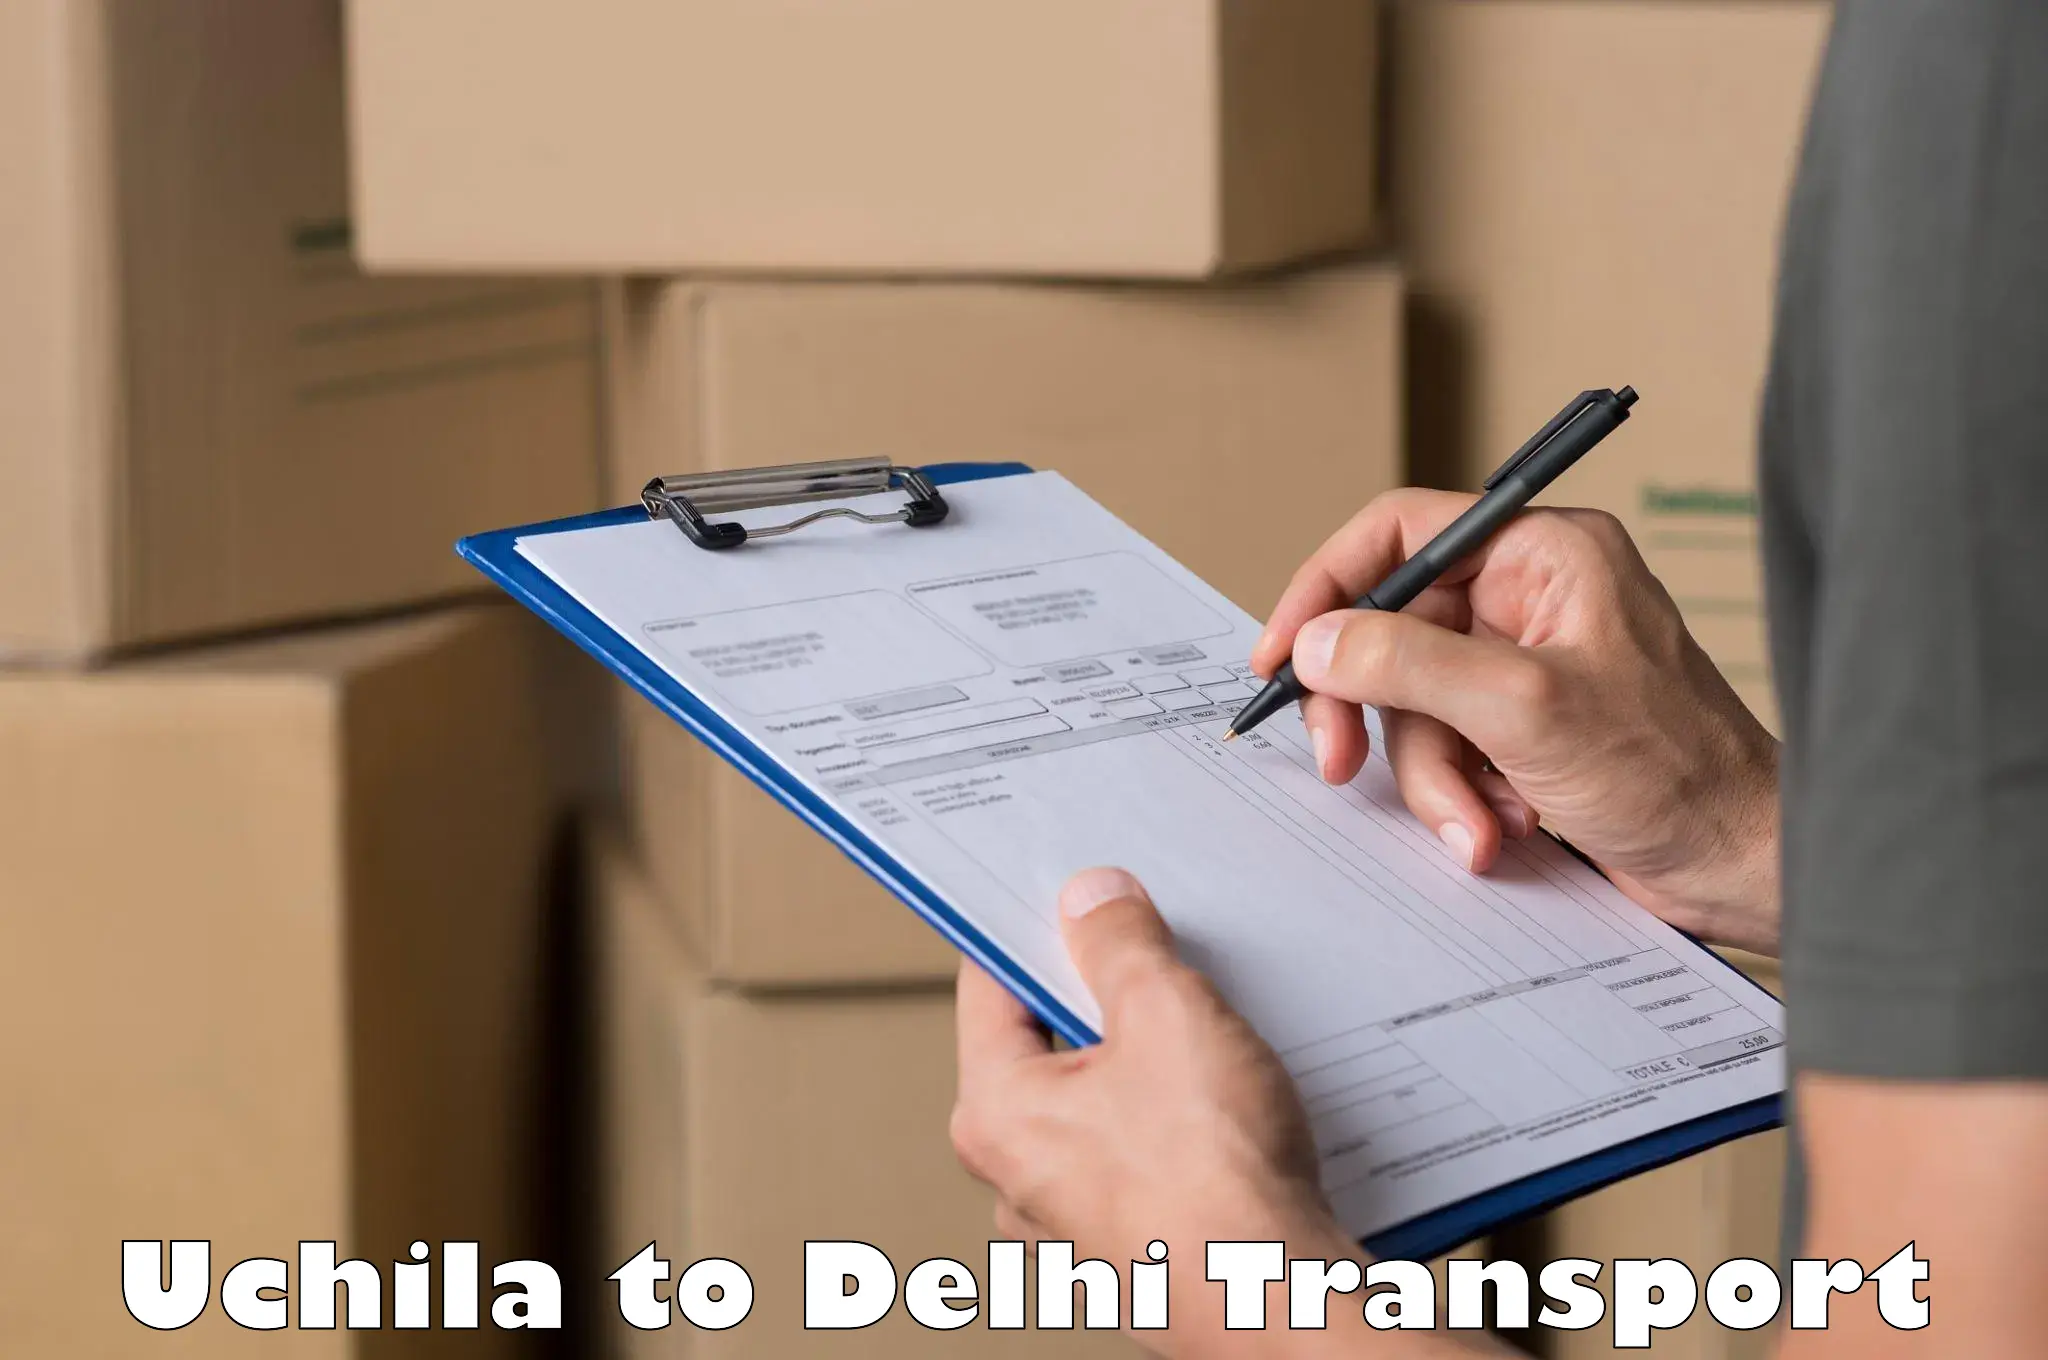 Intercity transport Uchila to East Delhi